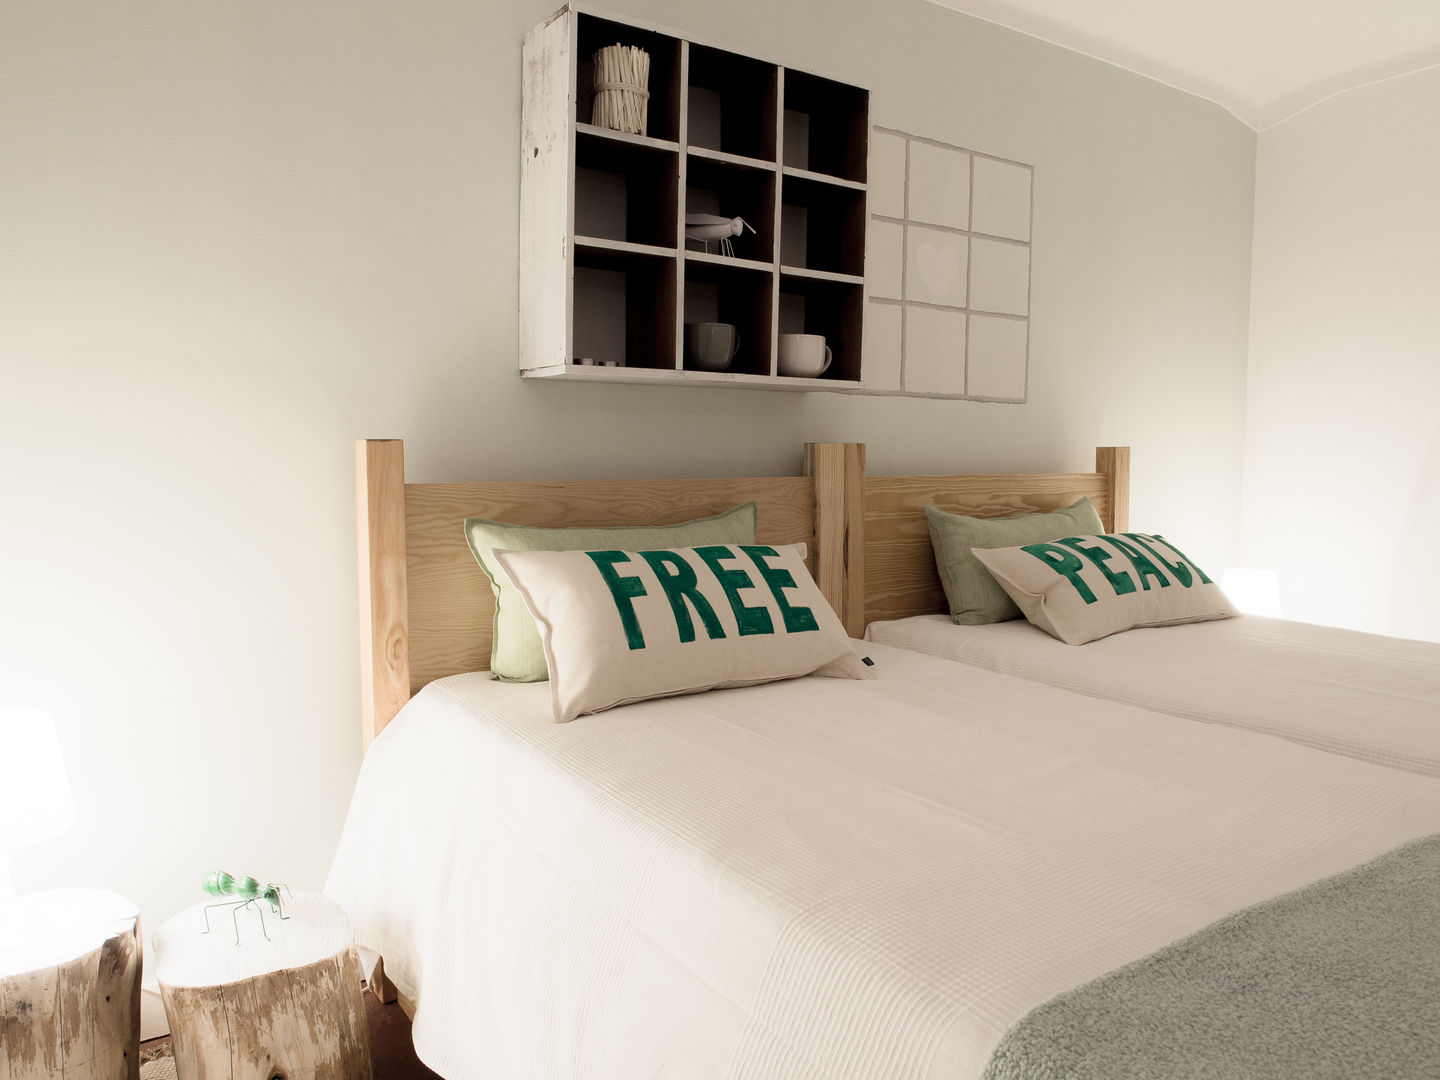 NiceWay Cascais Hostel - Life Bedroom - Cascais, MUDA Home Design MUDA Home Design Ticari alanlar Oteller